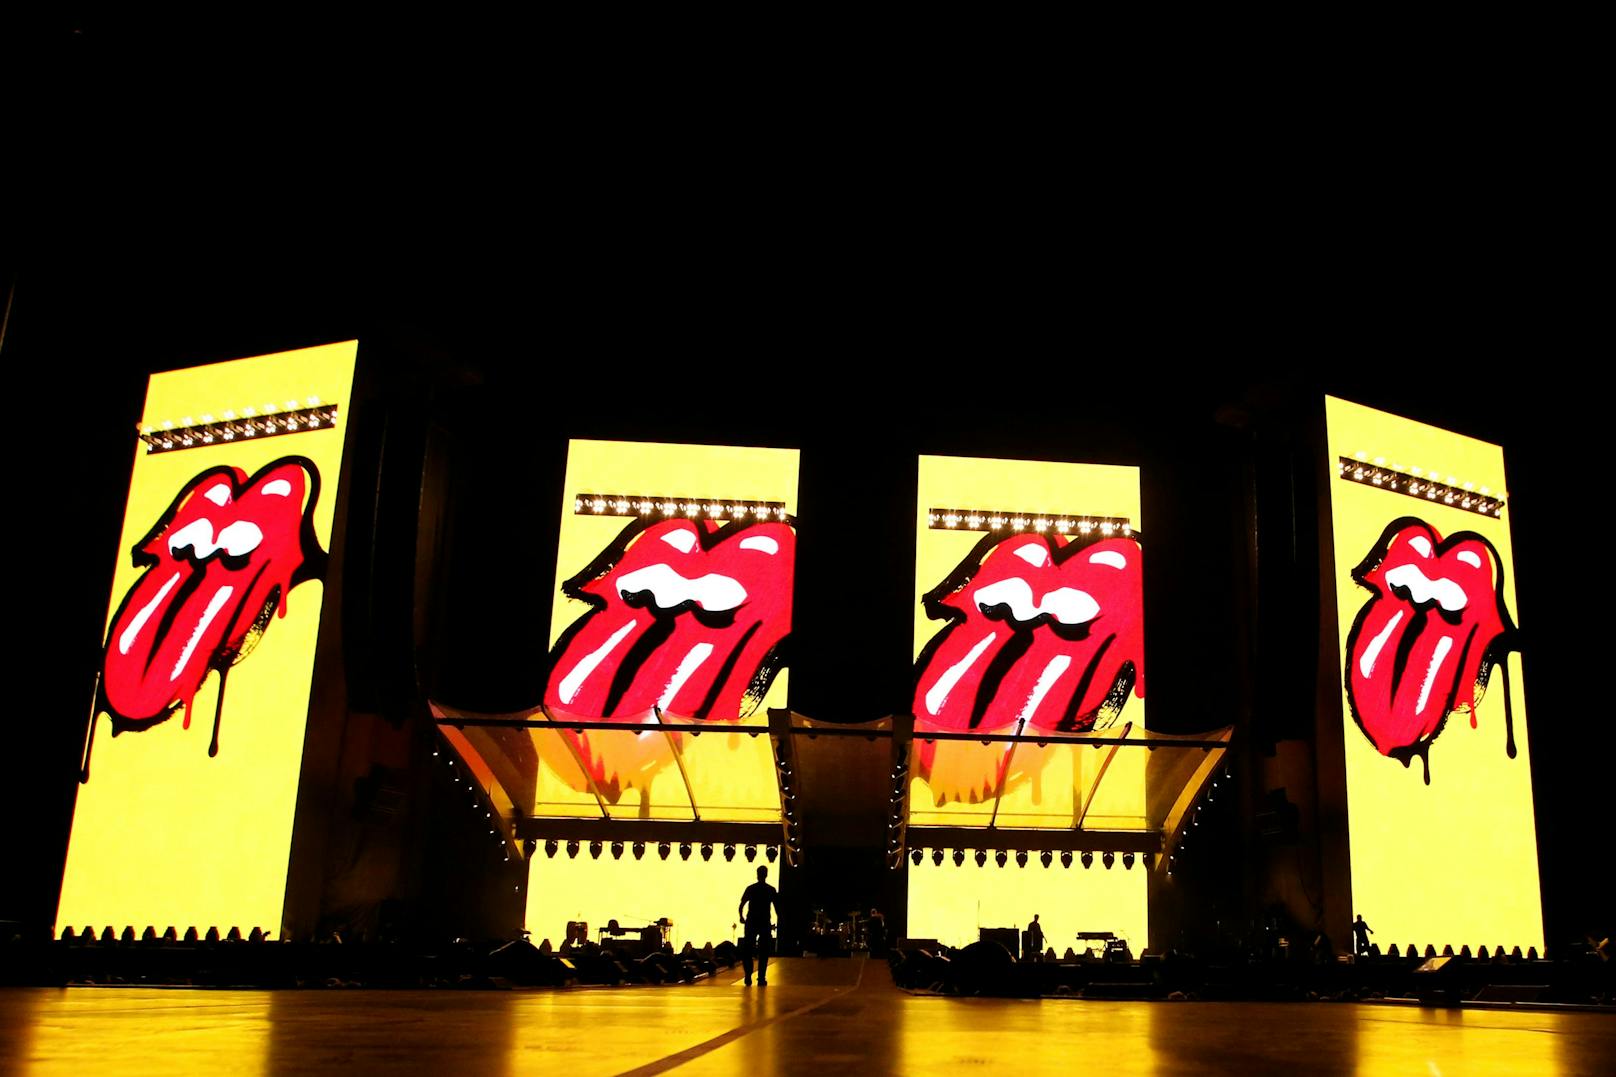 Das Rolling Stones Logo "Zunge und Lippen" wurde schon für unzählige Werbeaktionen benutzt. Hier im August 2022 bei einem Konzert der Band in Kalifornien.